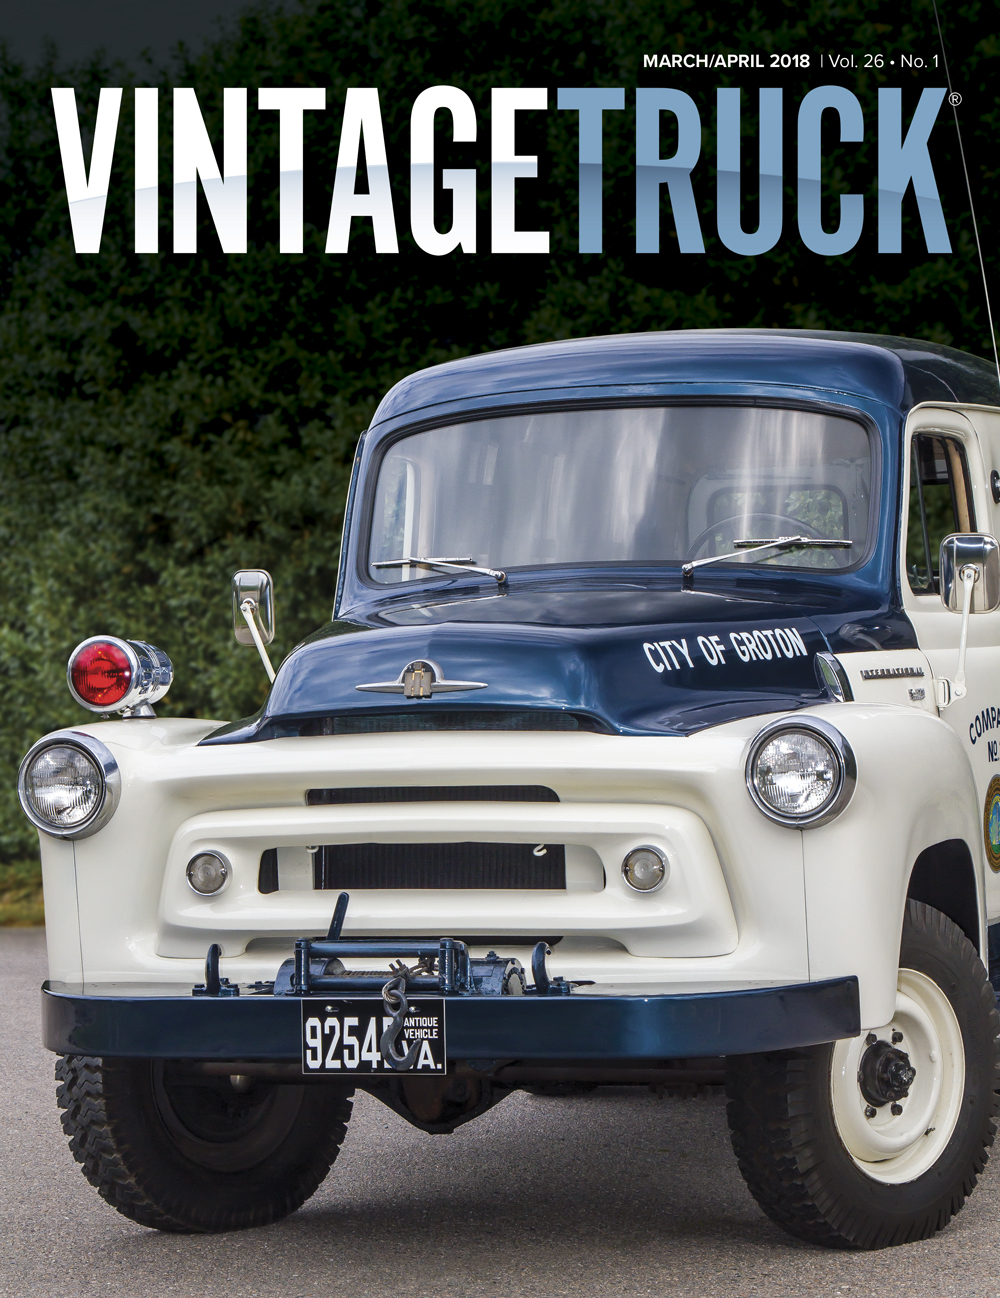 Vintage Truck magazine